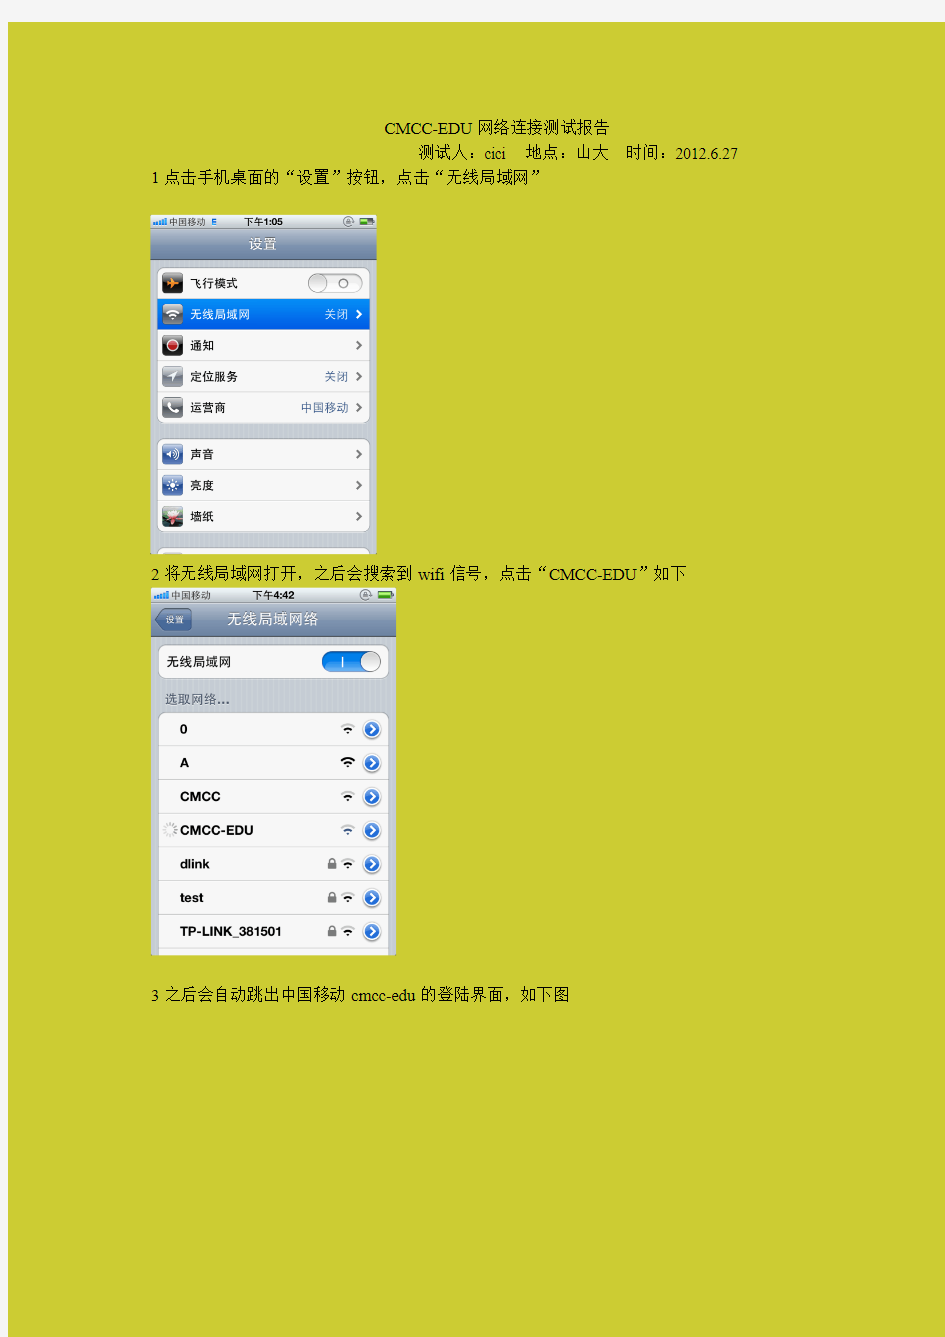 中国移动校园(CMCC-EDU)WiFi上网教程